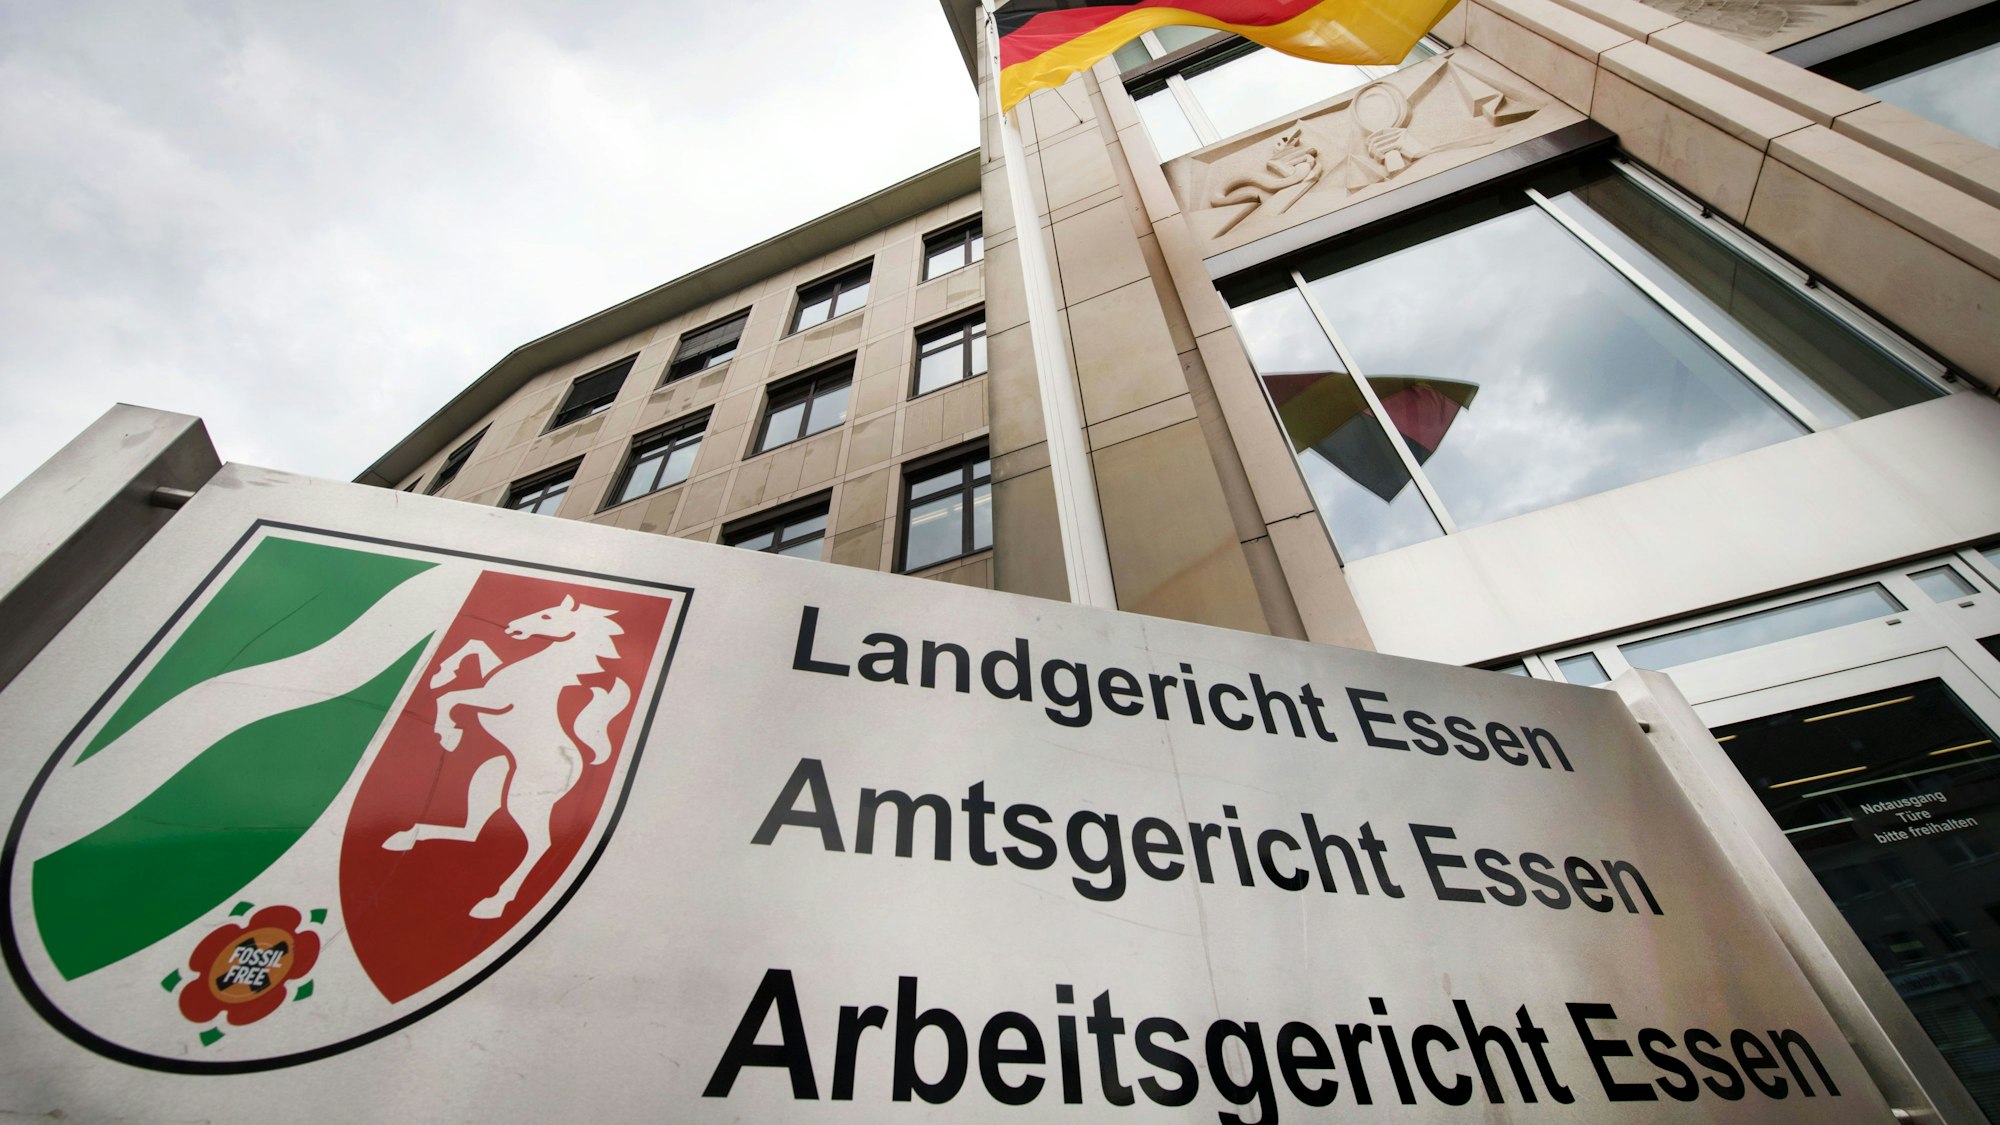 Aufnahme des Landgericht Essen aus der Froschperspektive - im Hintergrund weht eine Deutschlandfahne unter einem bewölkten Himmel.